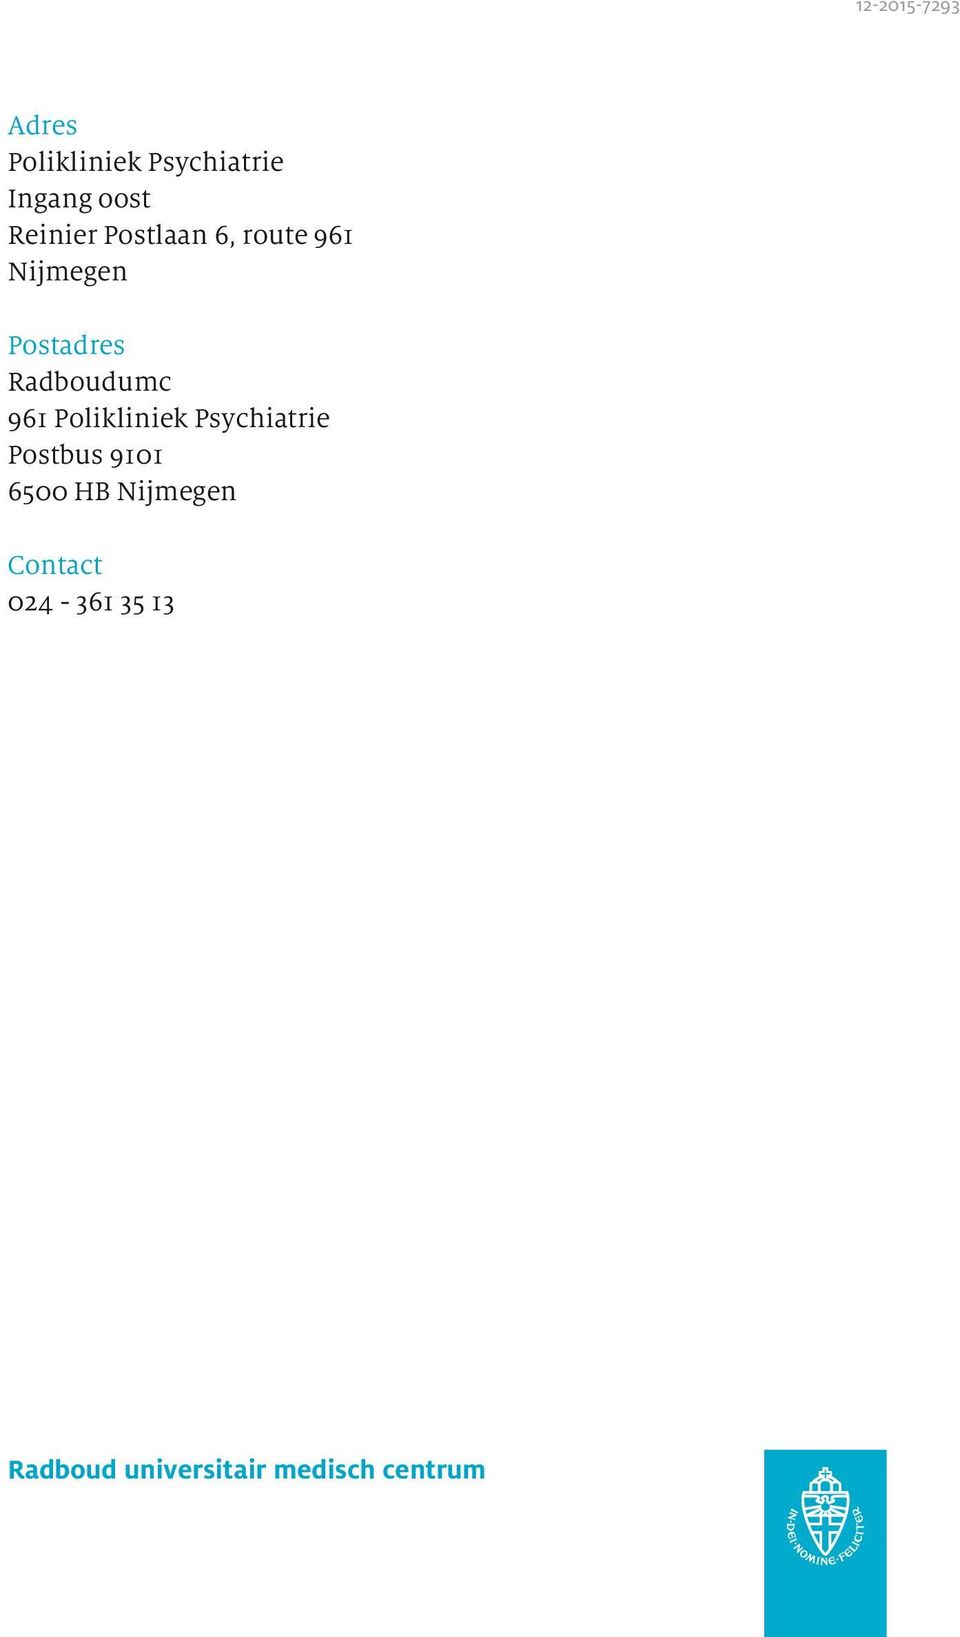 Radboudumc 961 Polikliniek Psychiatrie Postbus 9101 6500